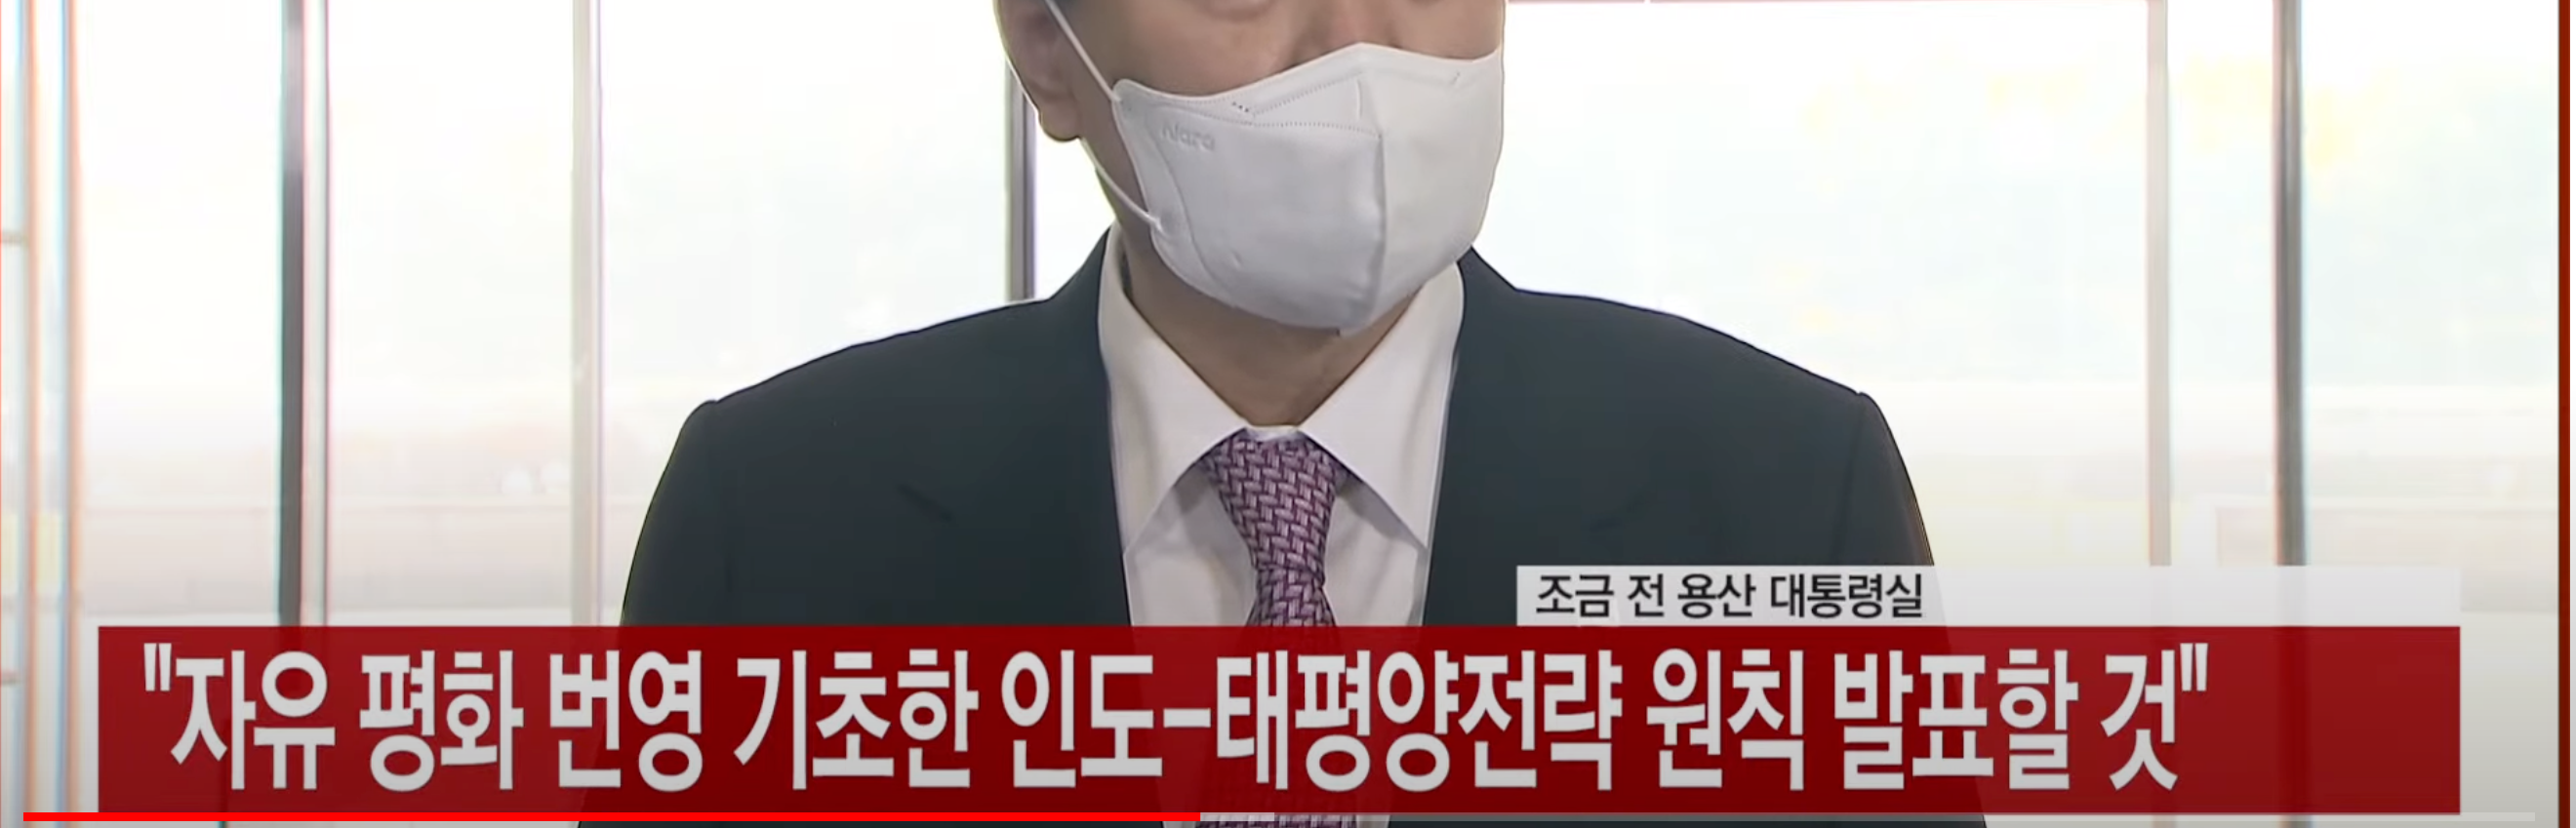 [에디터픽] “순방, 국익 걸린 문제”. MBC 취재진 대통령 전용기 탑승 불허한 尹 _ YTN - YouTube (1).png